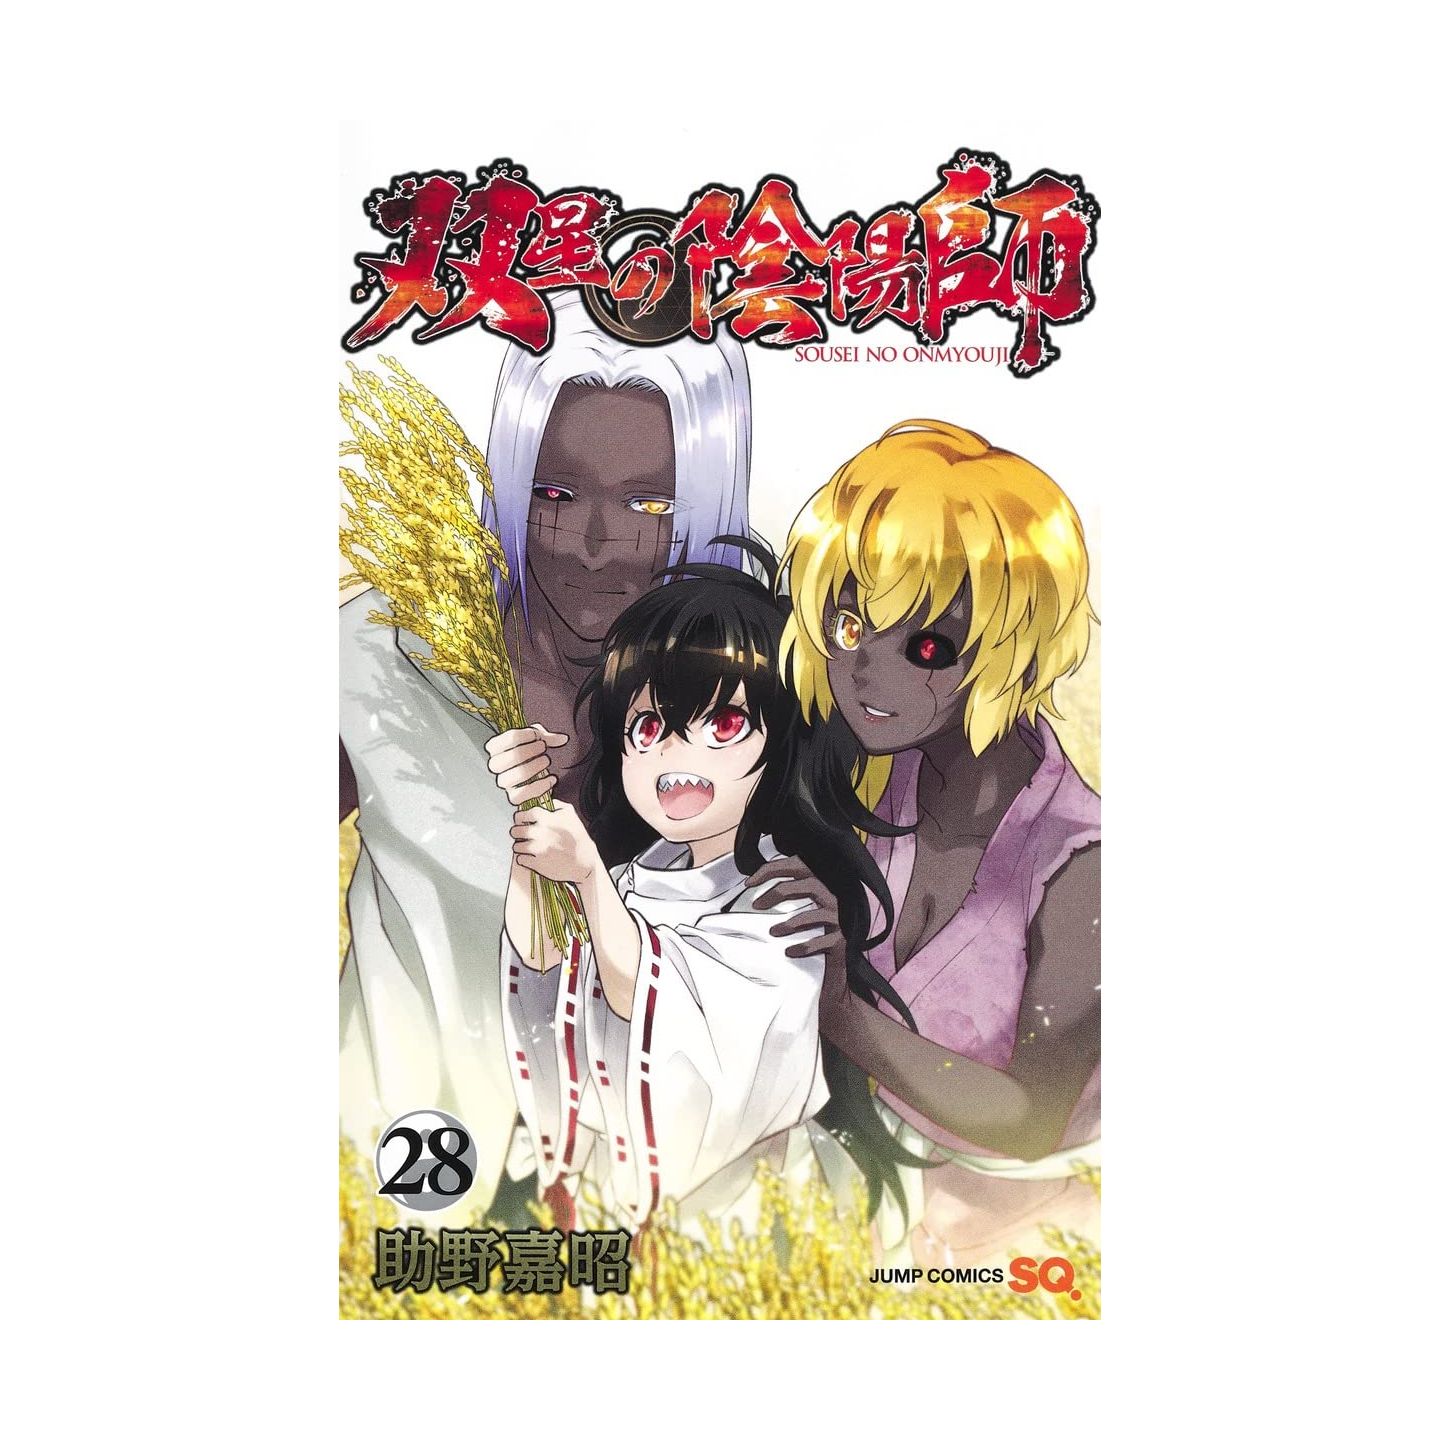 Twin Star Exorcists: Onmyoji, Vol. 2 by Yoshiaki Sukeno